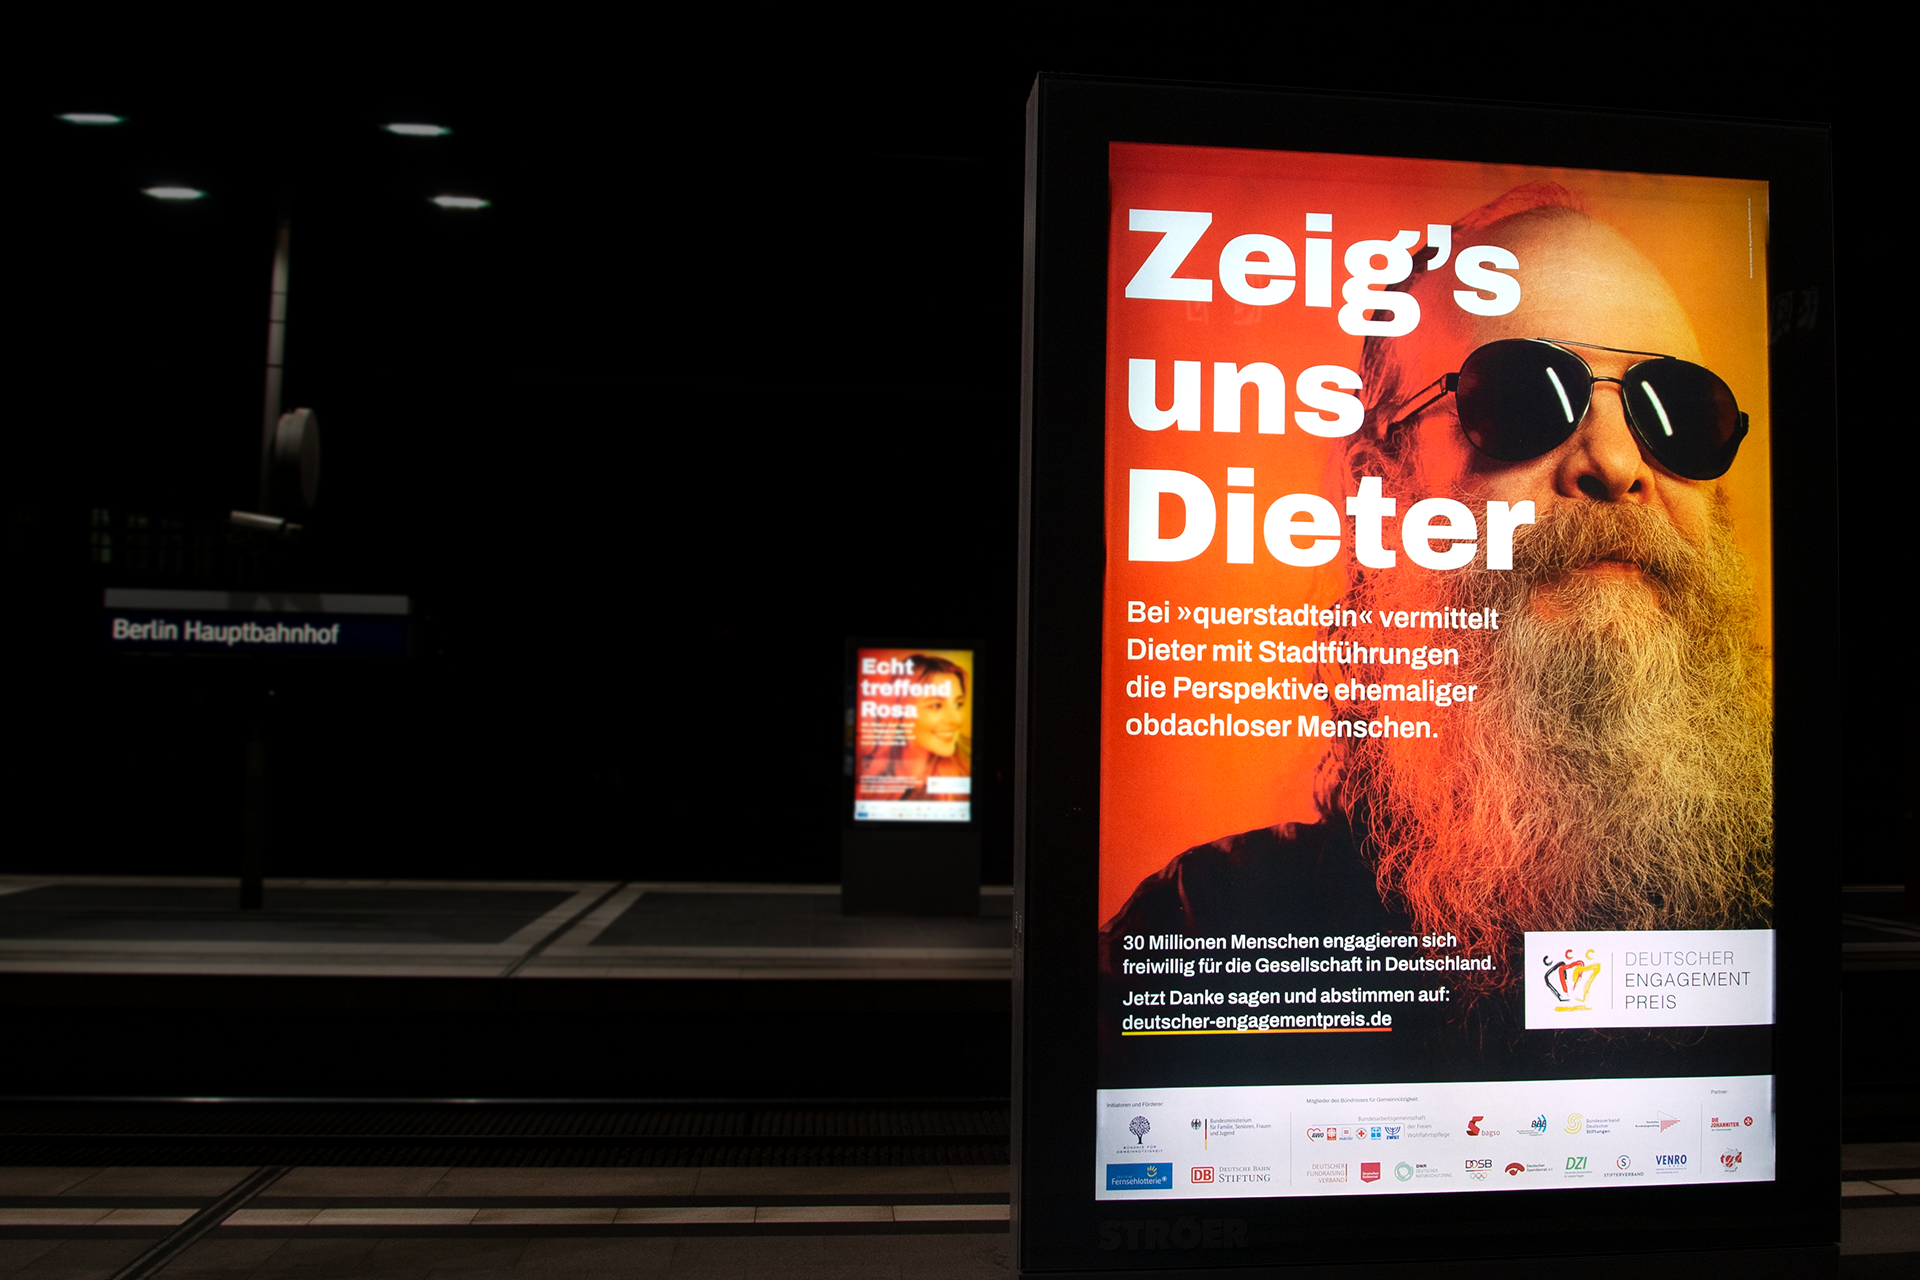 Echt Stark, Deutscher Engagementpreis Kampagnen Plakat mit bärtigem Mann und Slogan `Zeig's uns Dieter`